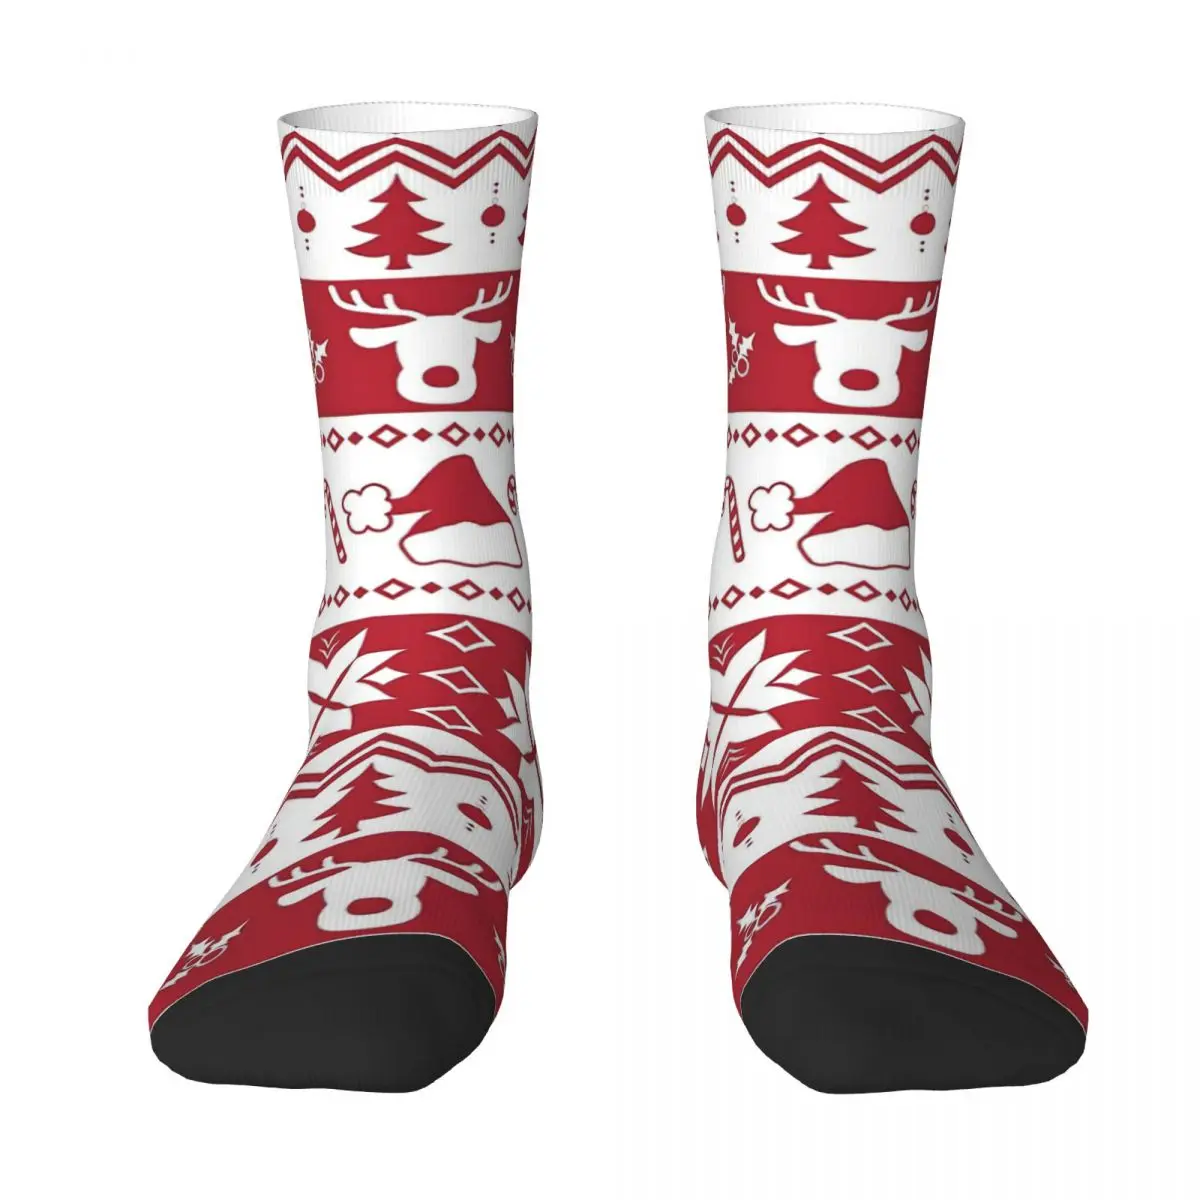 It's Christmas Time ! Adult Socks,Unisex socks,men Socks women Socks